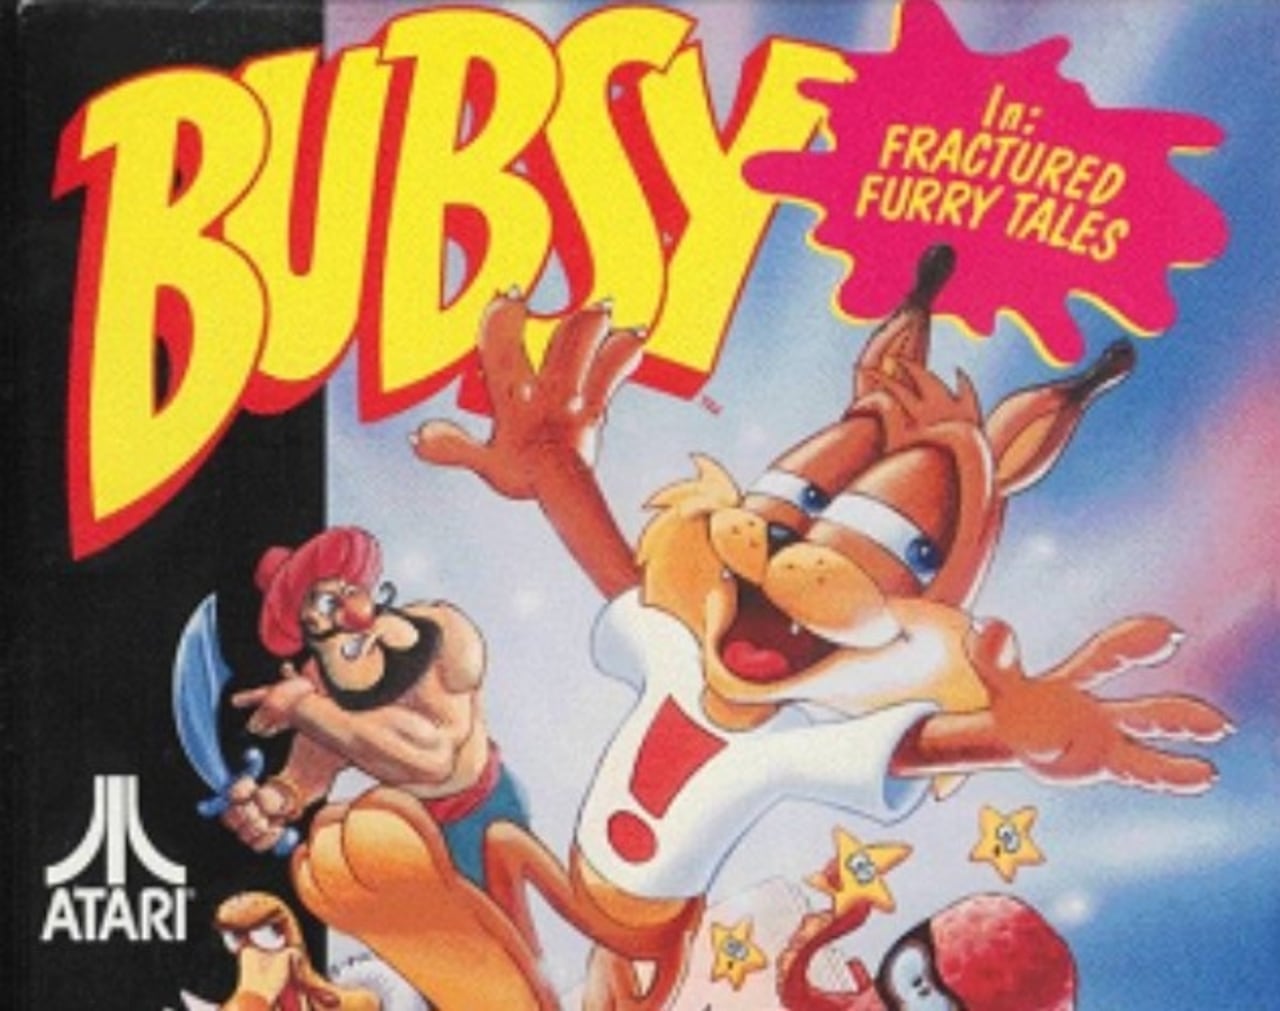 Bubsy es uno de los títulos comprados por Atari.